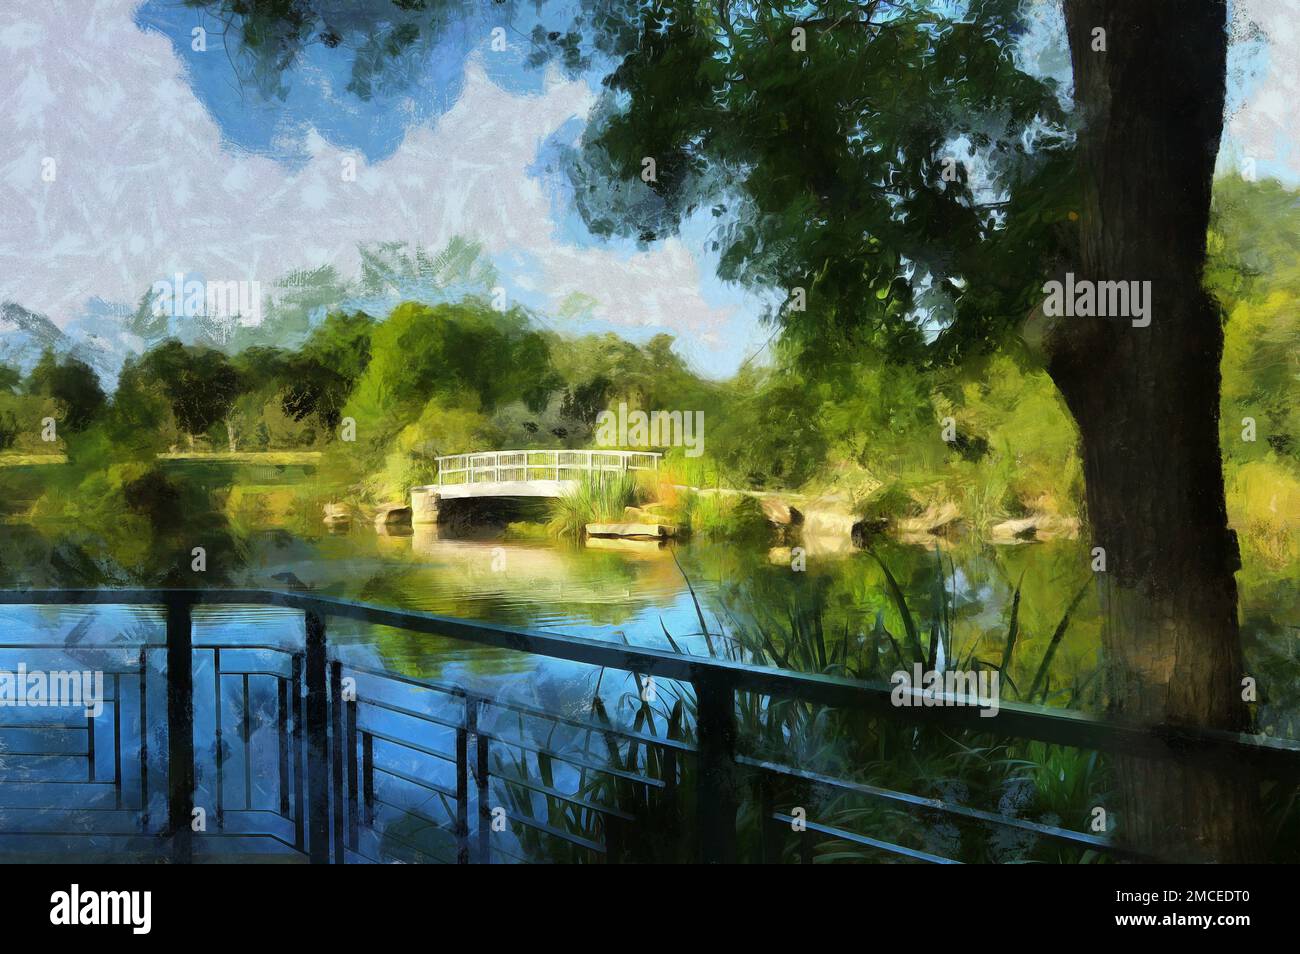 Pont Monet avec réflexion sur l'eau. Cox Arboretum et Metro Park, Dayton, Ohio, États-Unis. La photographie a été post-traitée avec un technicien de peinture numérique informatique Banque D'Images